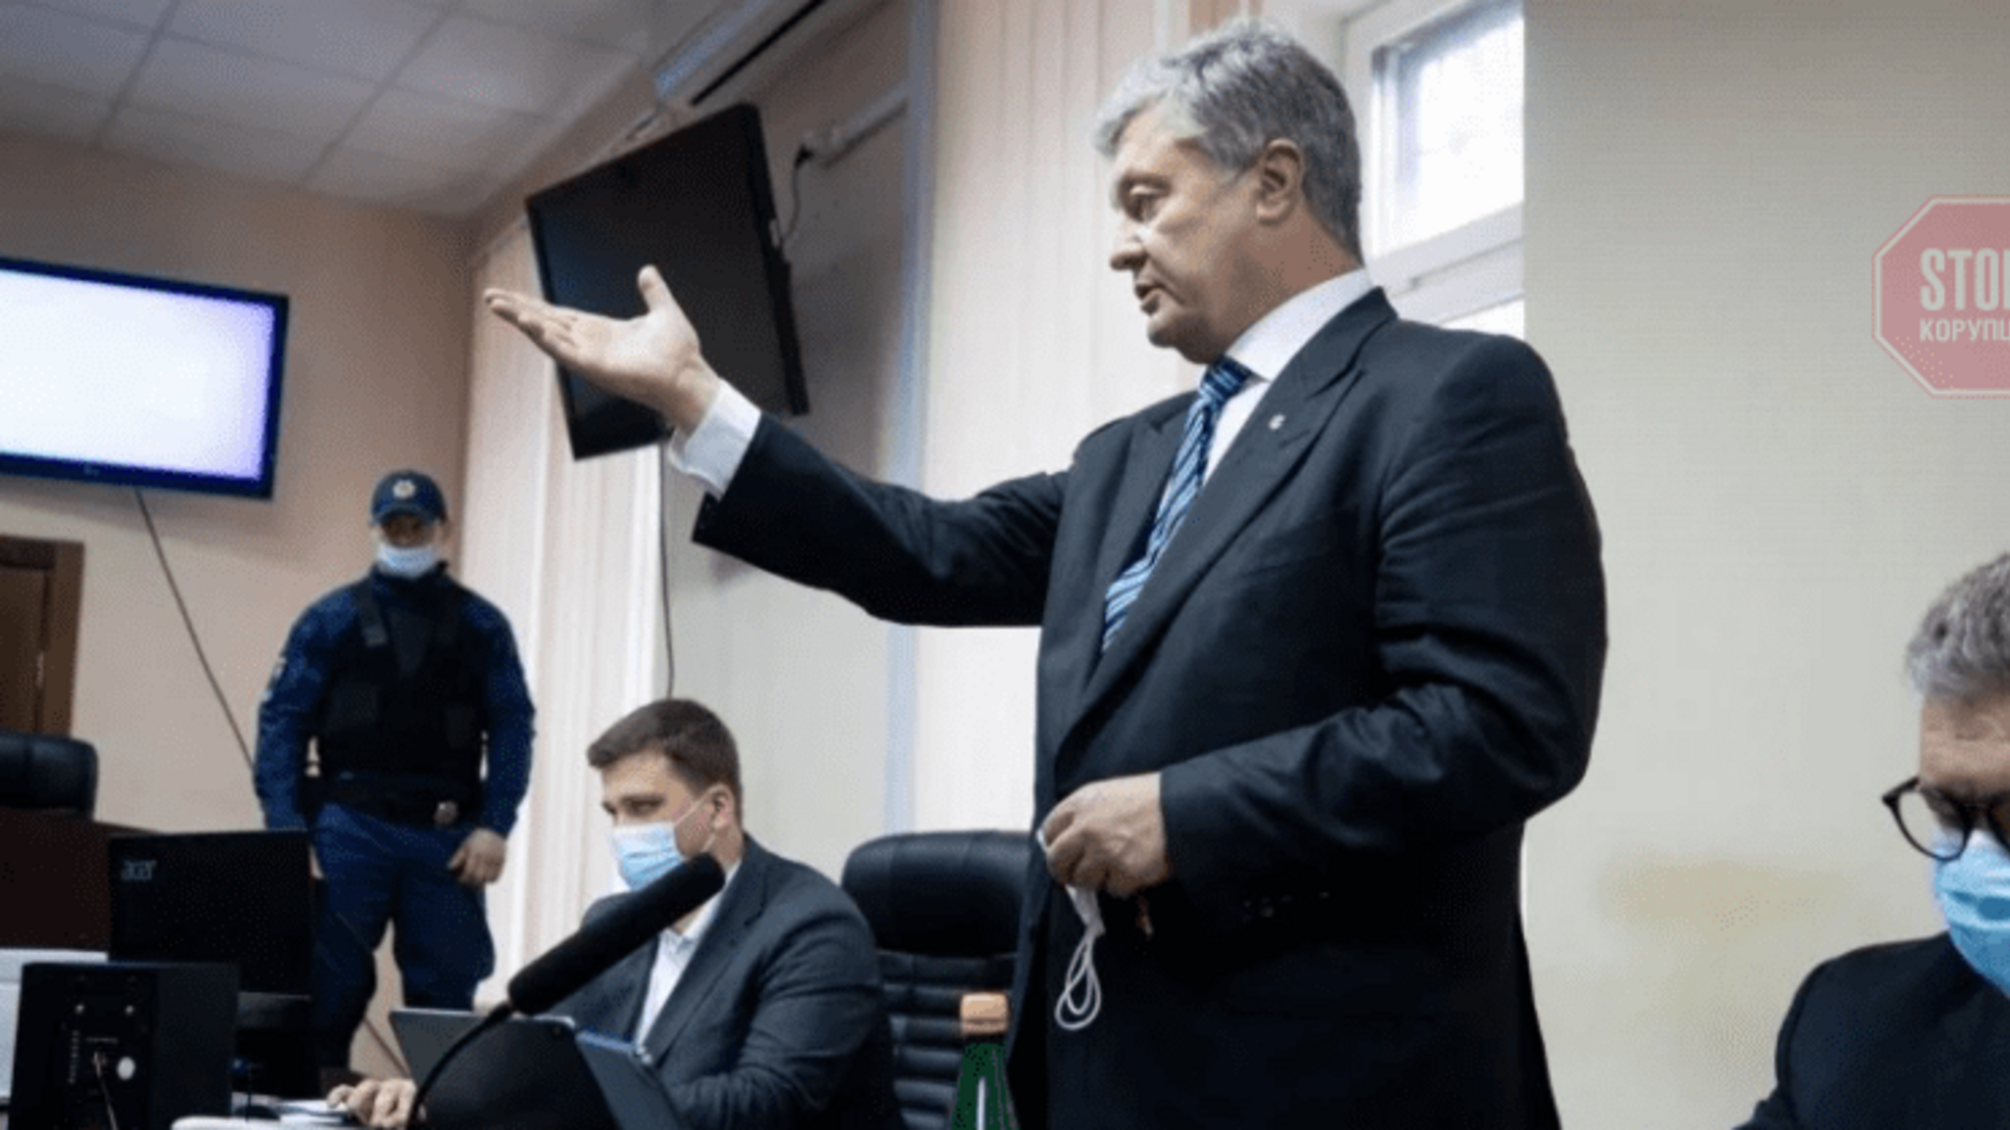 Посадить или отпустить: Печерский суд решает судьбу Порошенко